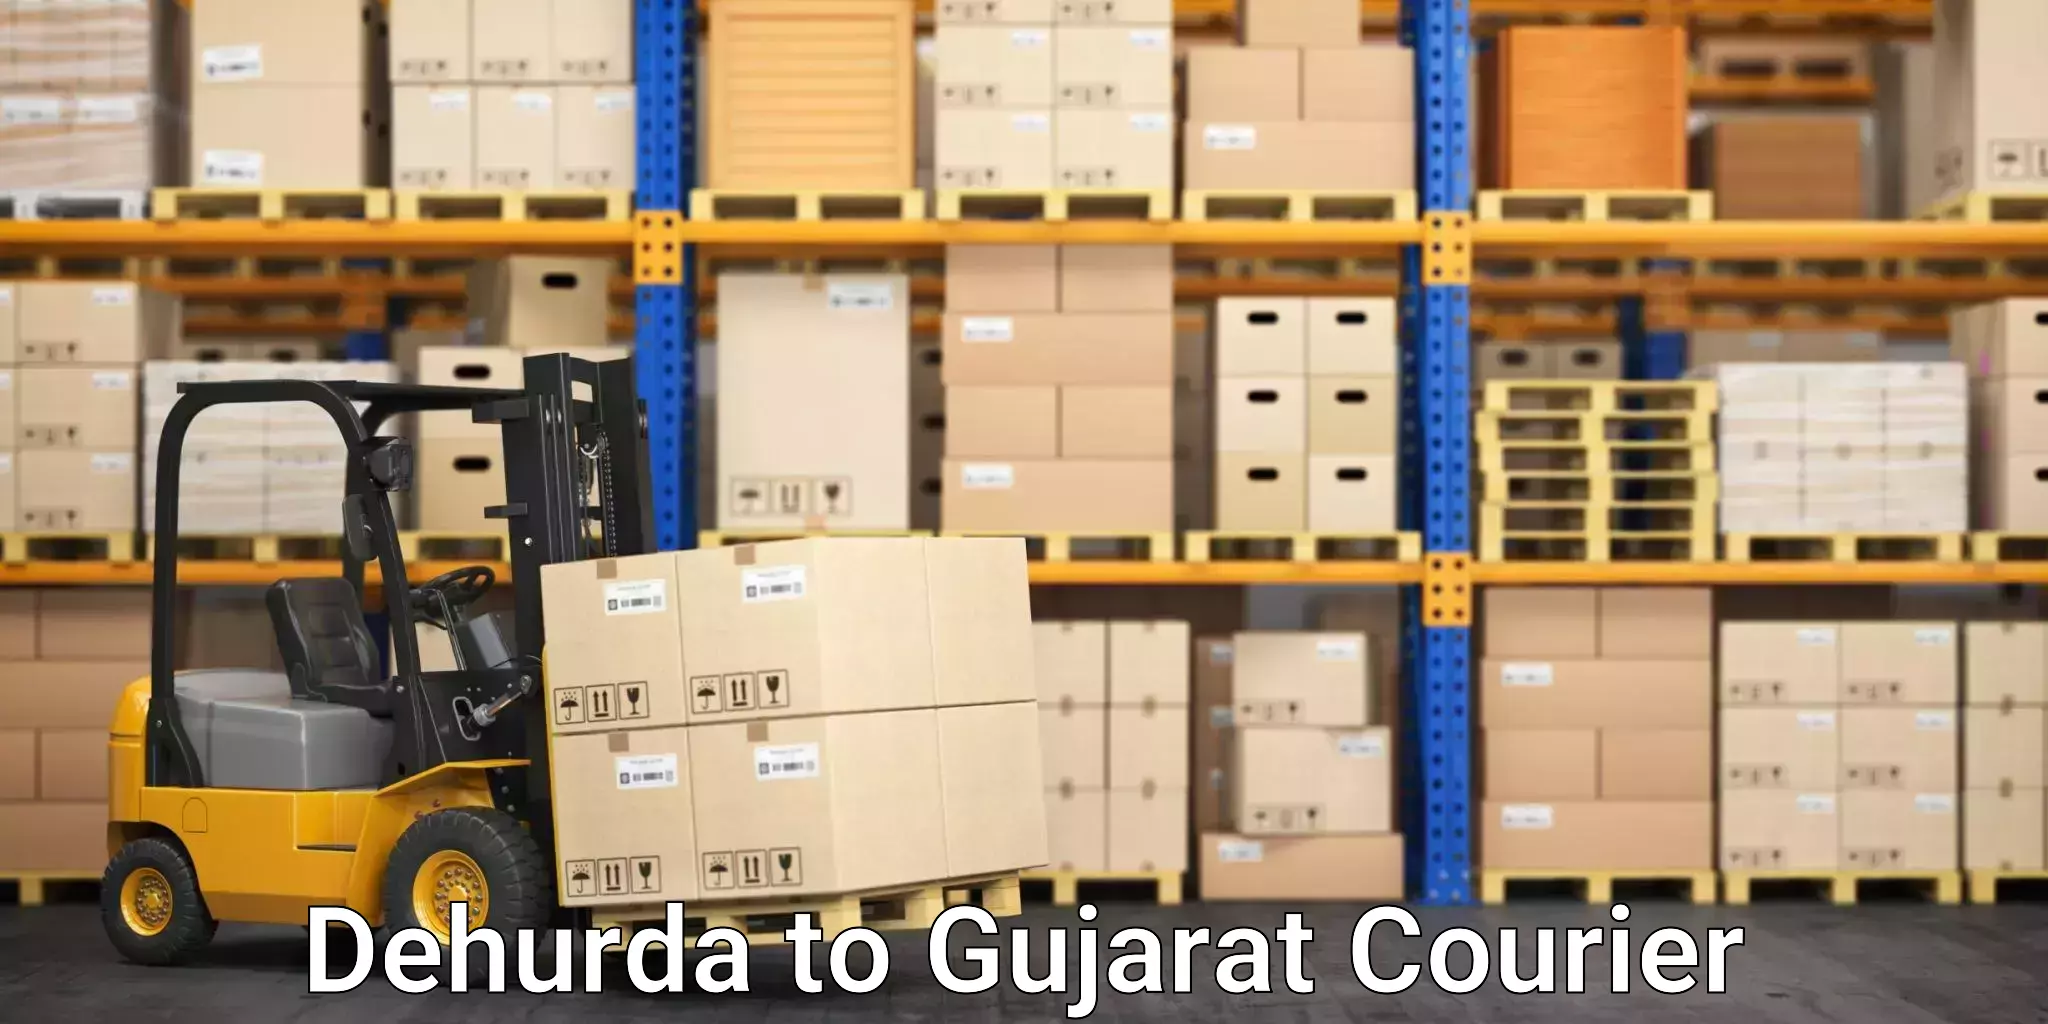 Efficient parcel service Dehurda to Surat